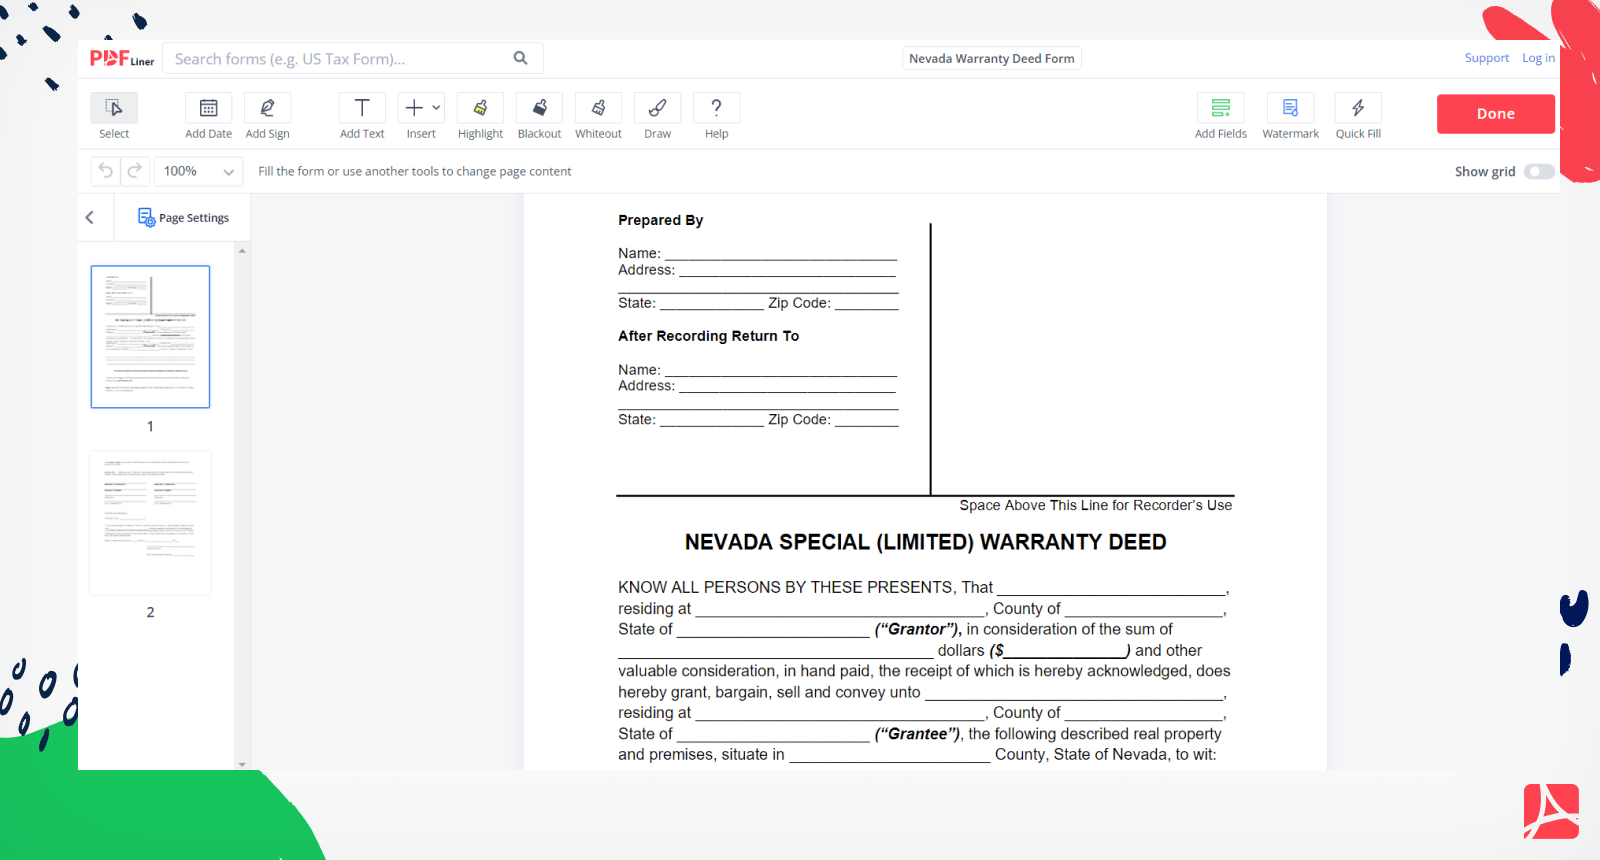 Nevada Warranty Deed Form Screenshot